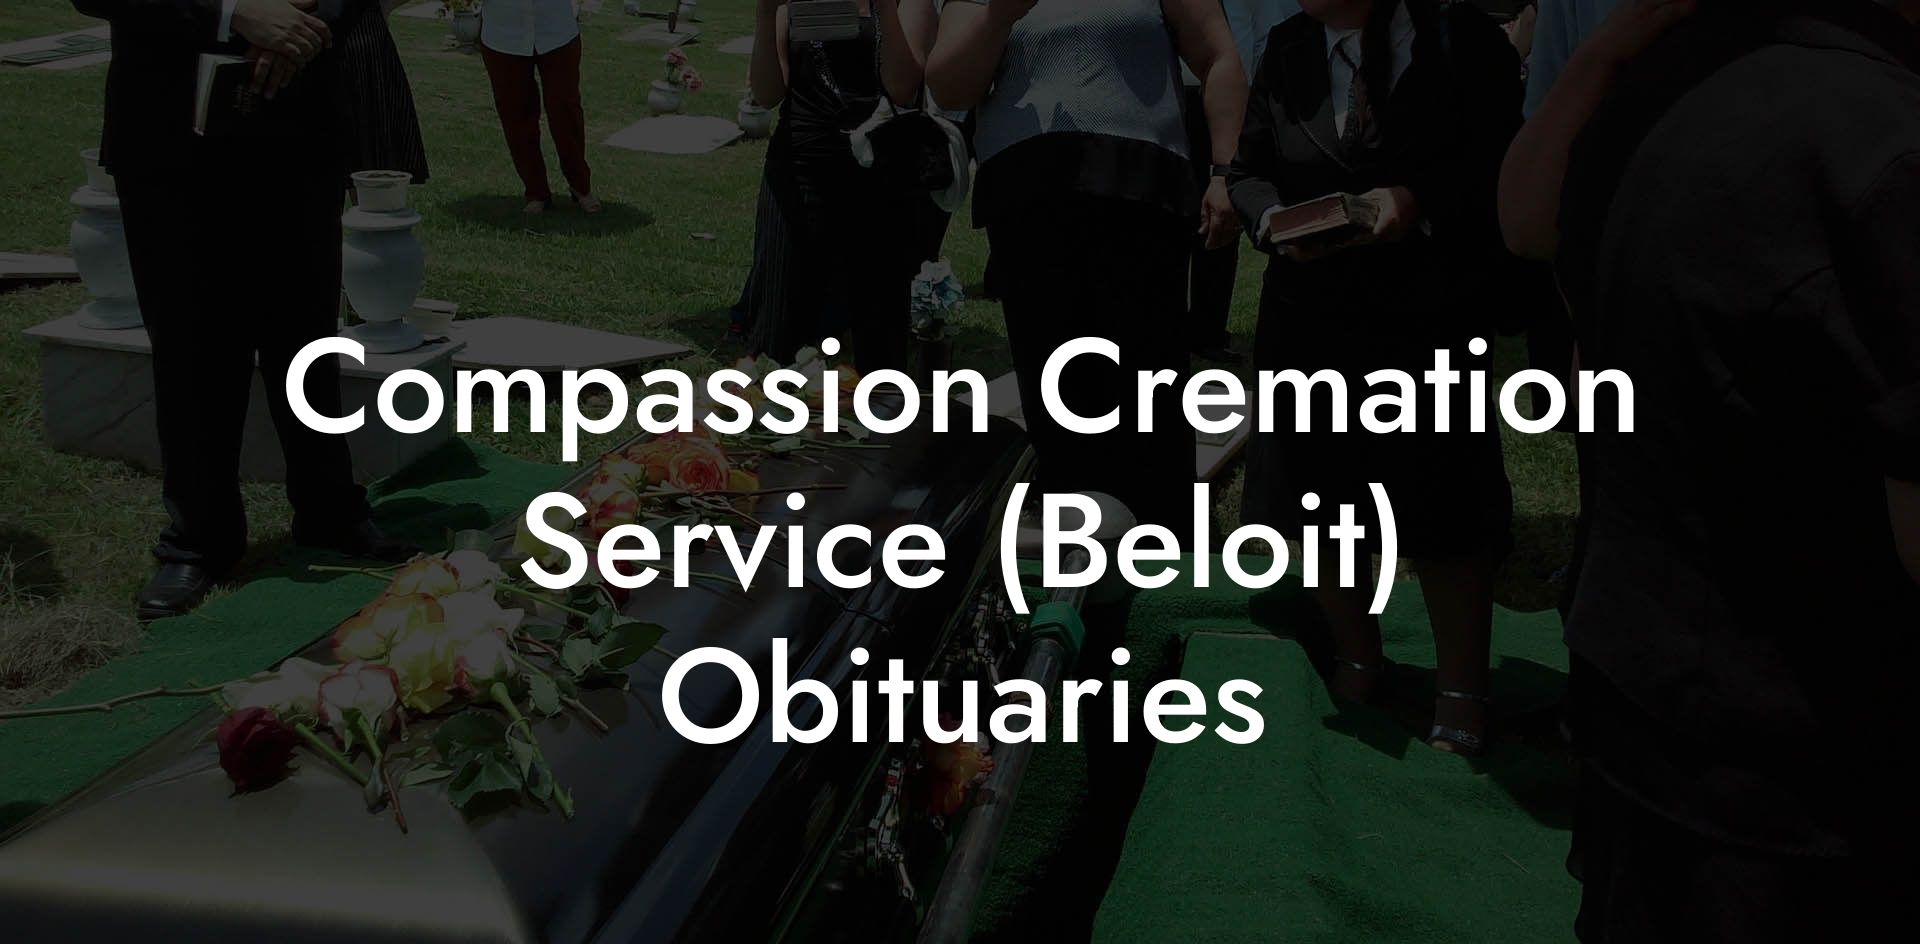 Compassion Cremation Service (Beloit) Obituaries